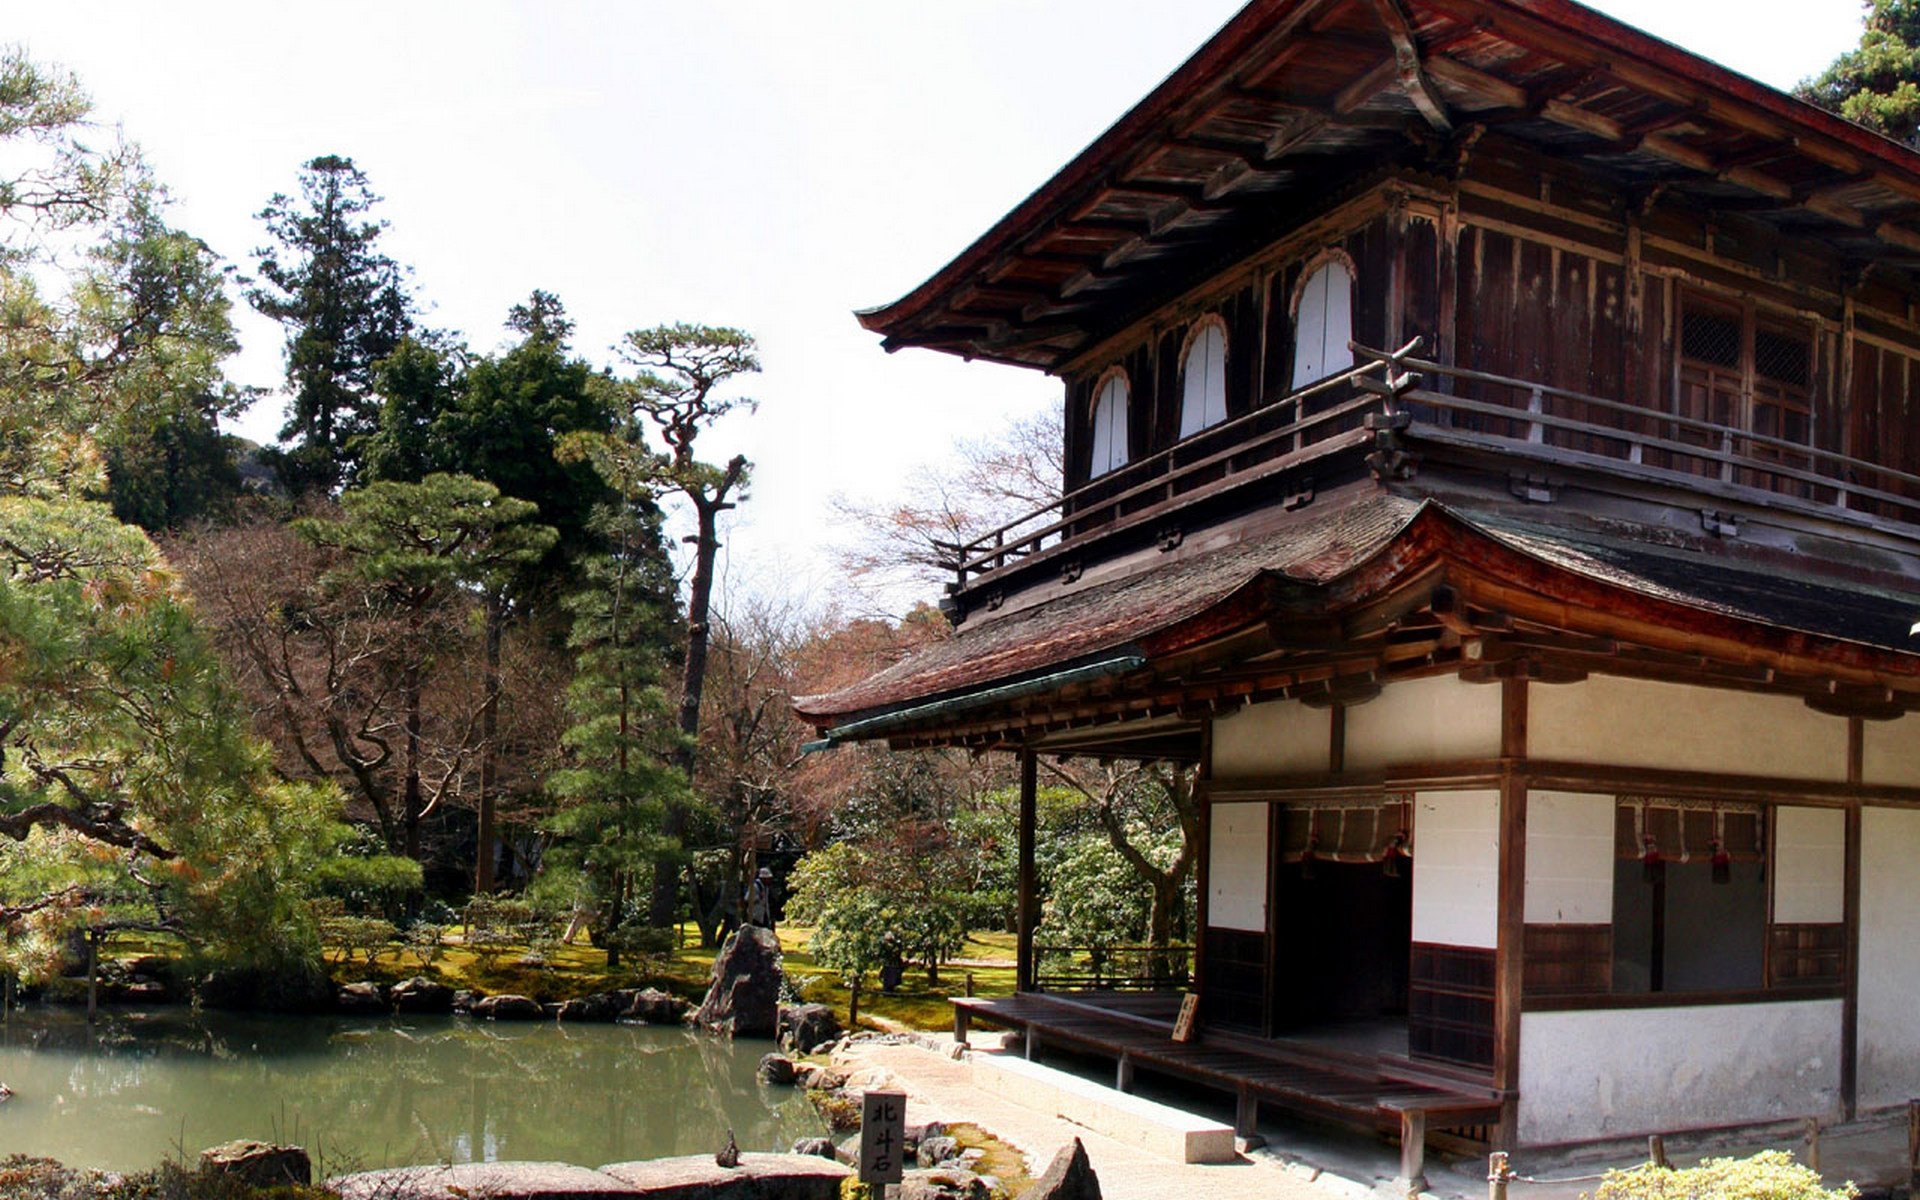 Китайские дома видео. Матия архитектура Киото. Сёин-дзукури. Минка японский дом. Матия дом в Японии.